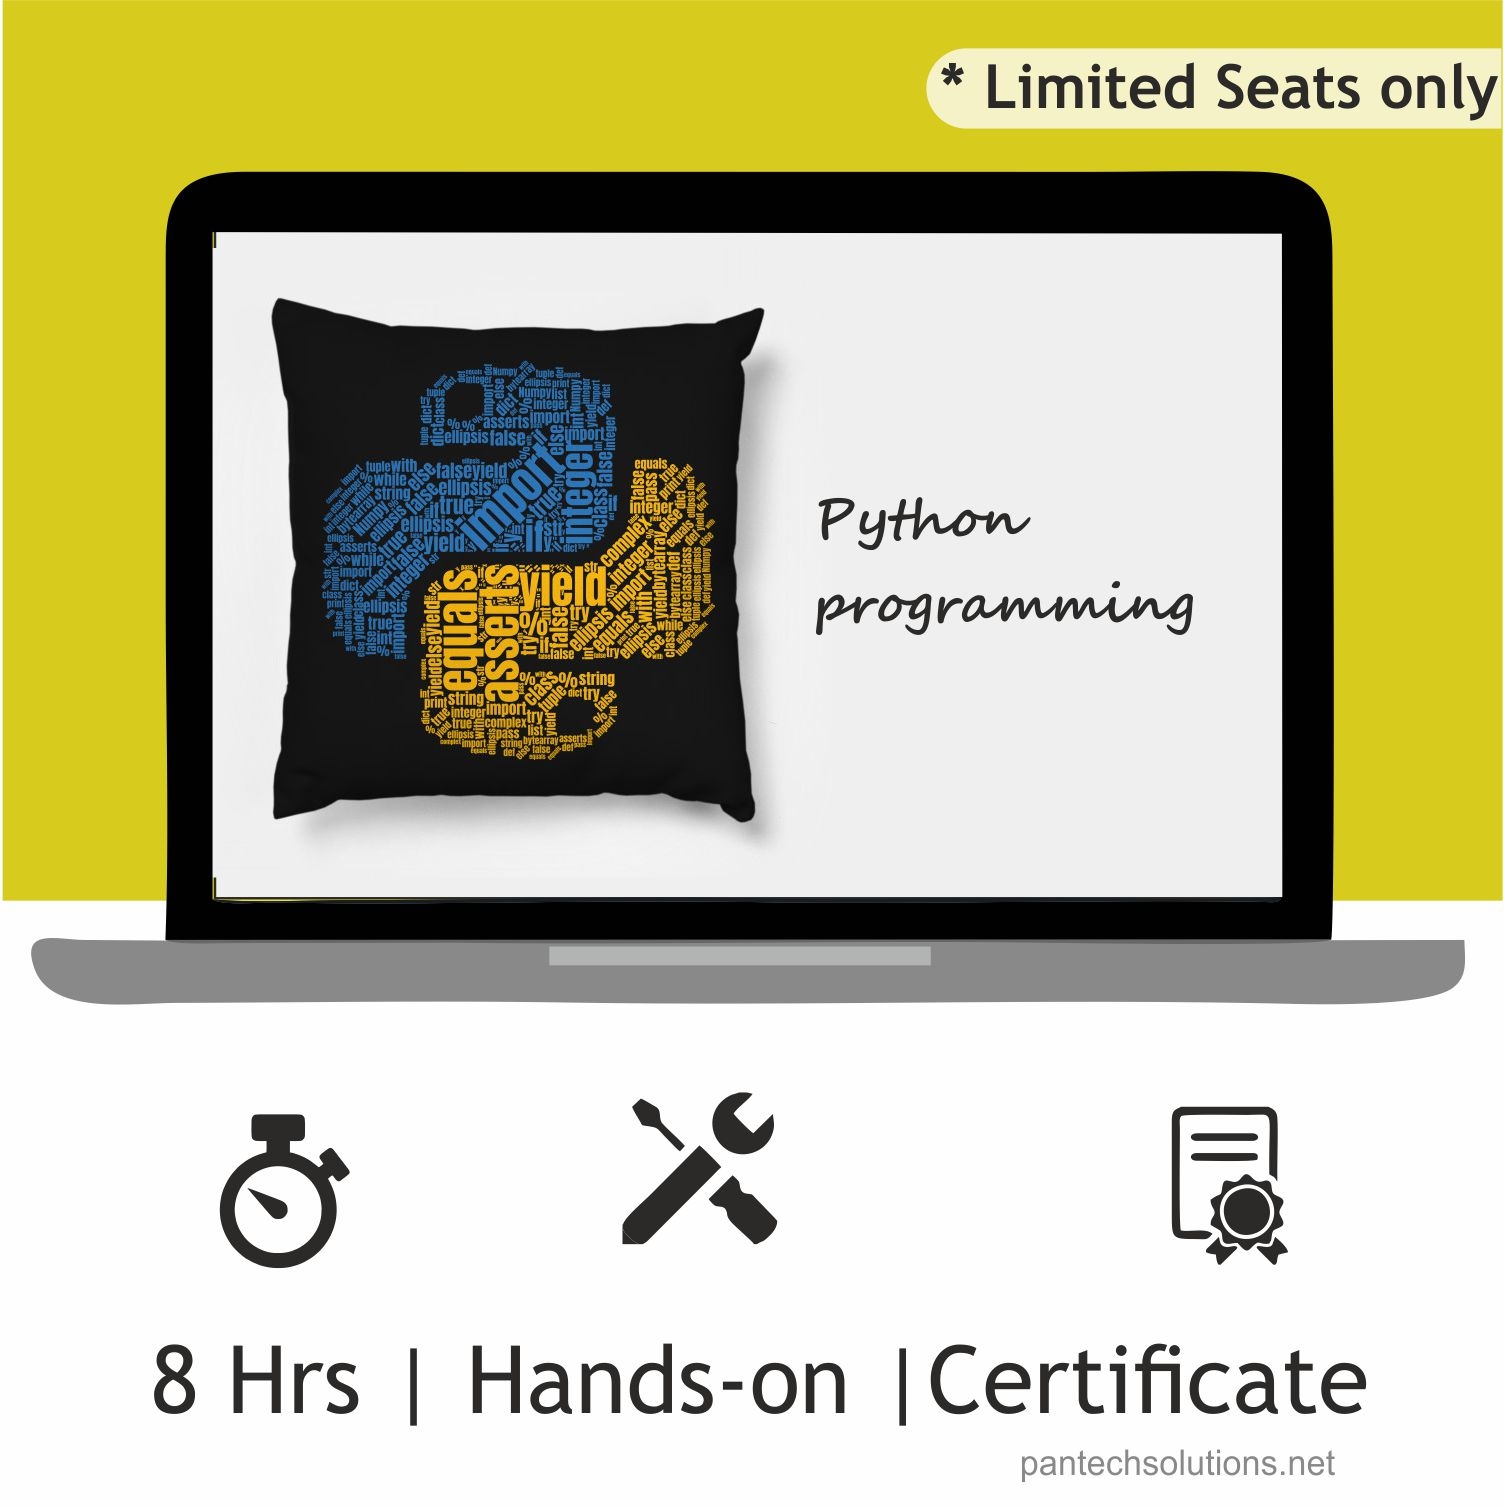 Workshop on Python